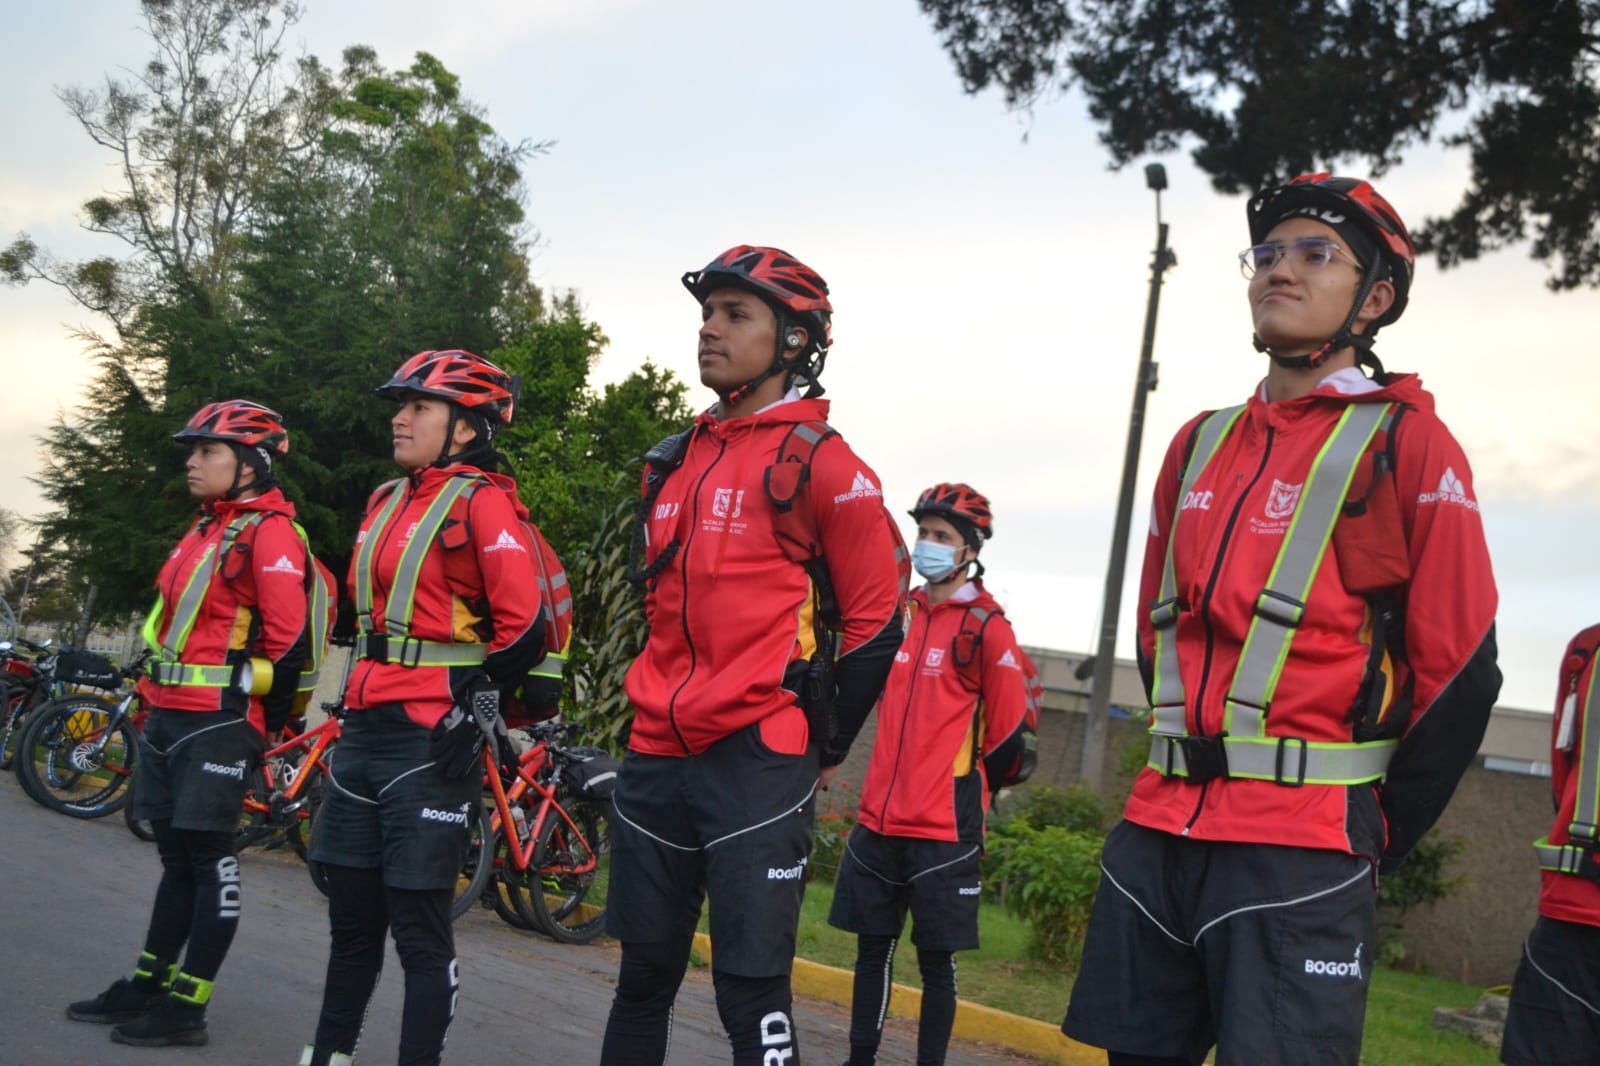 Imagen noticia Usted también puede ser Guardián de la Ciclovía en Bogotá